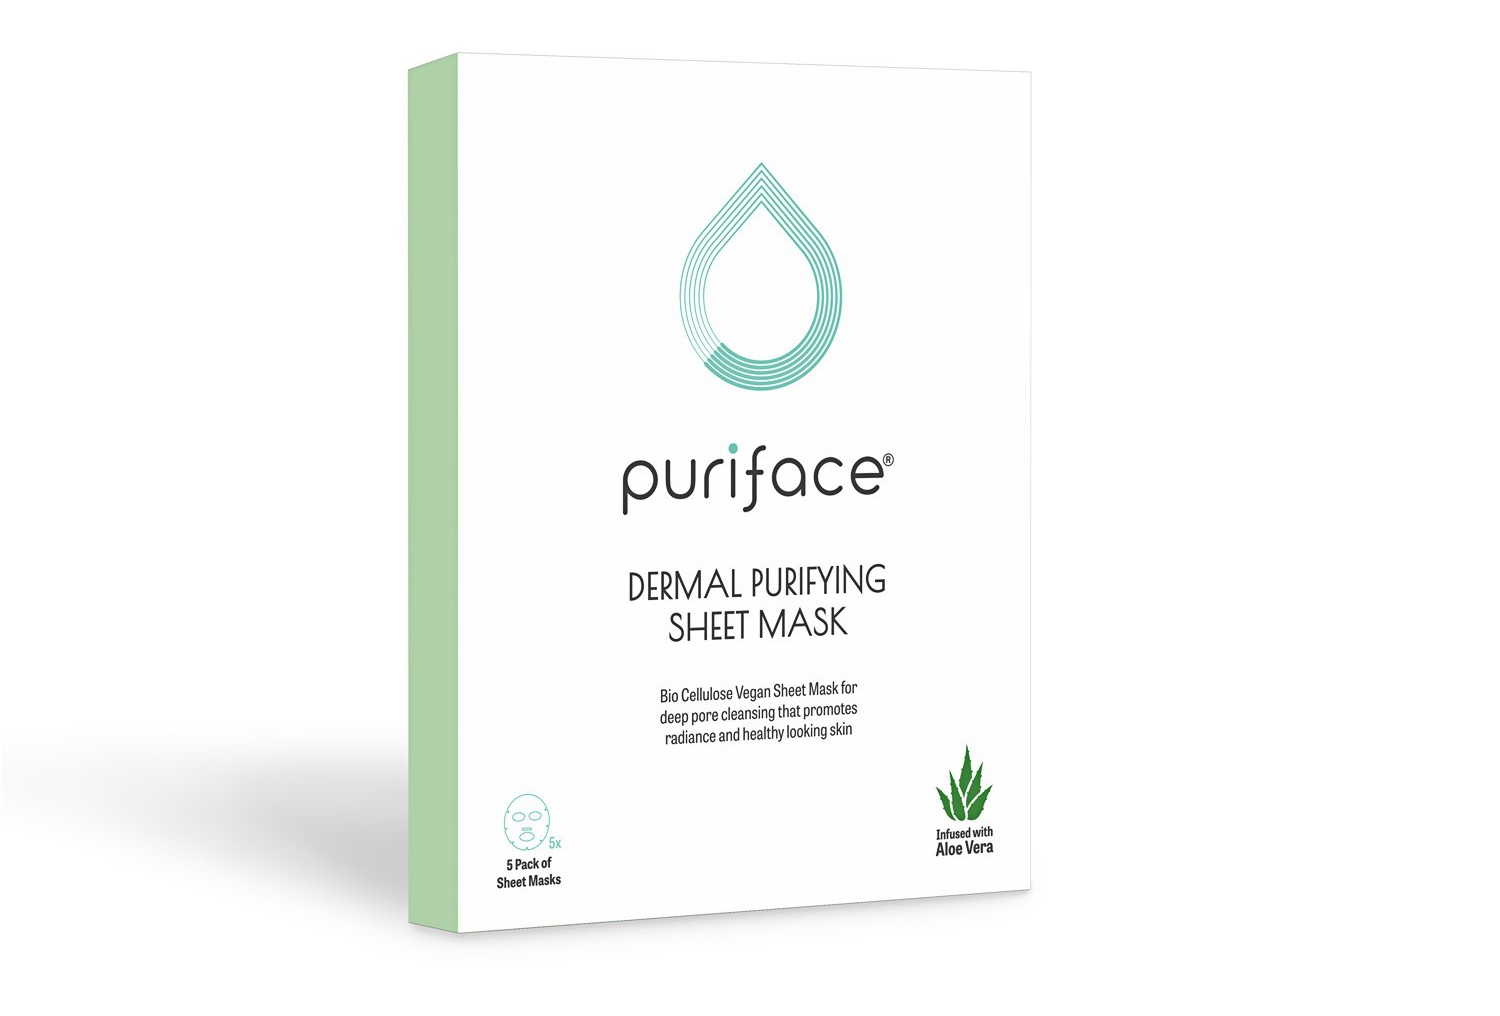 Puriface Dermal Purifying Sheet Mask